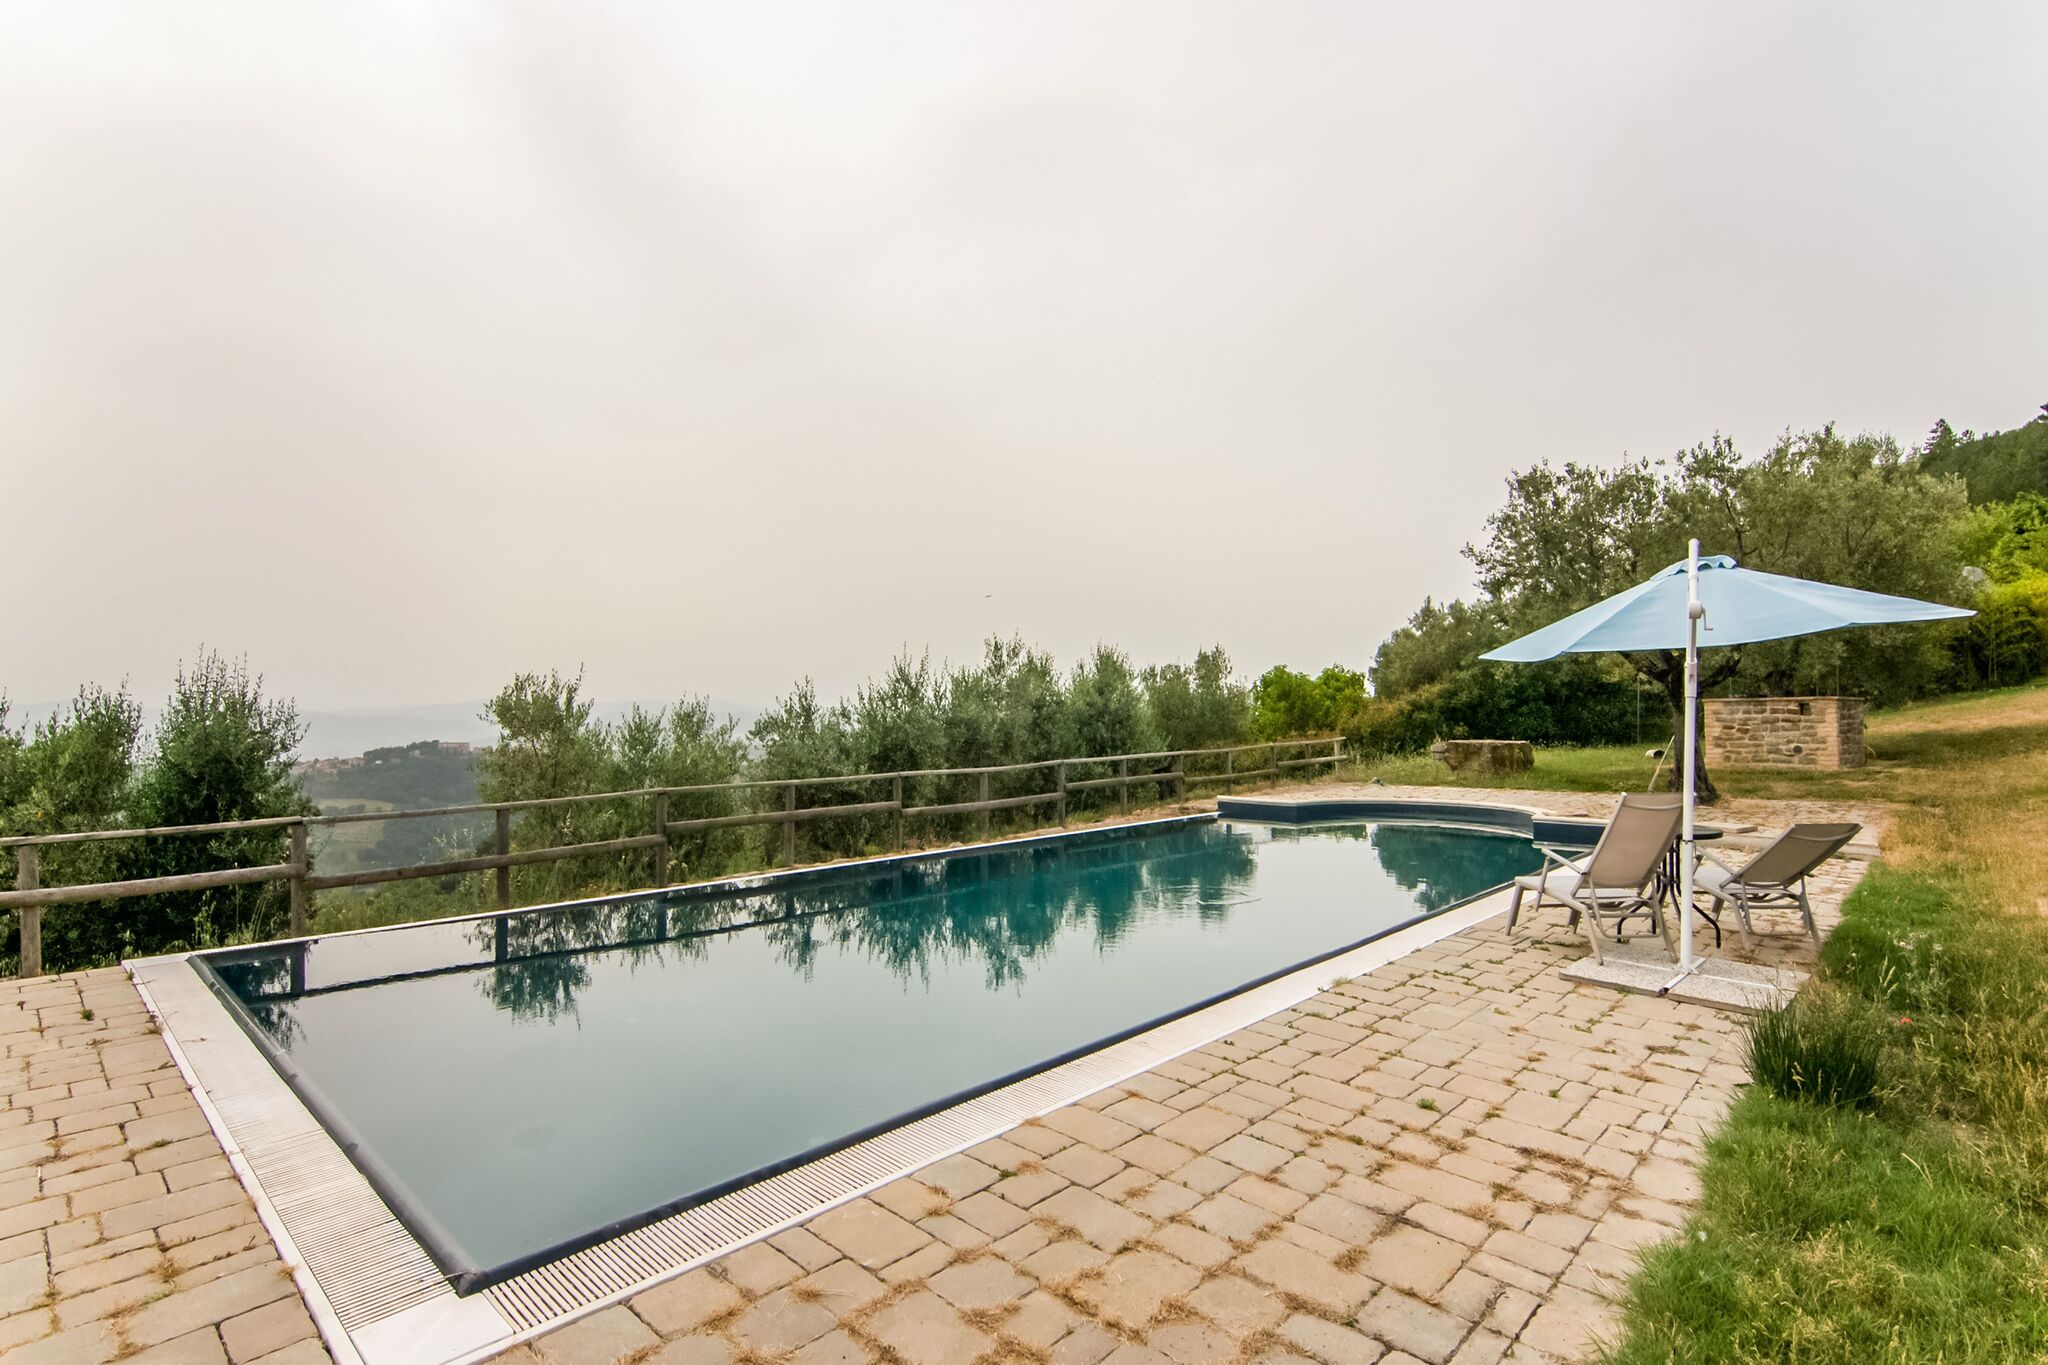 Maison de vacances confortable à Montone avec jardin